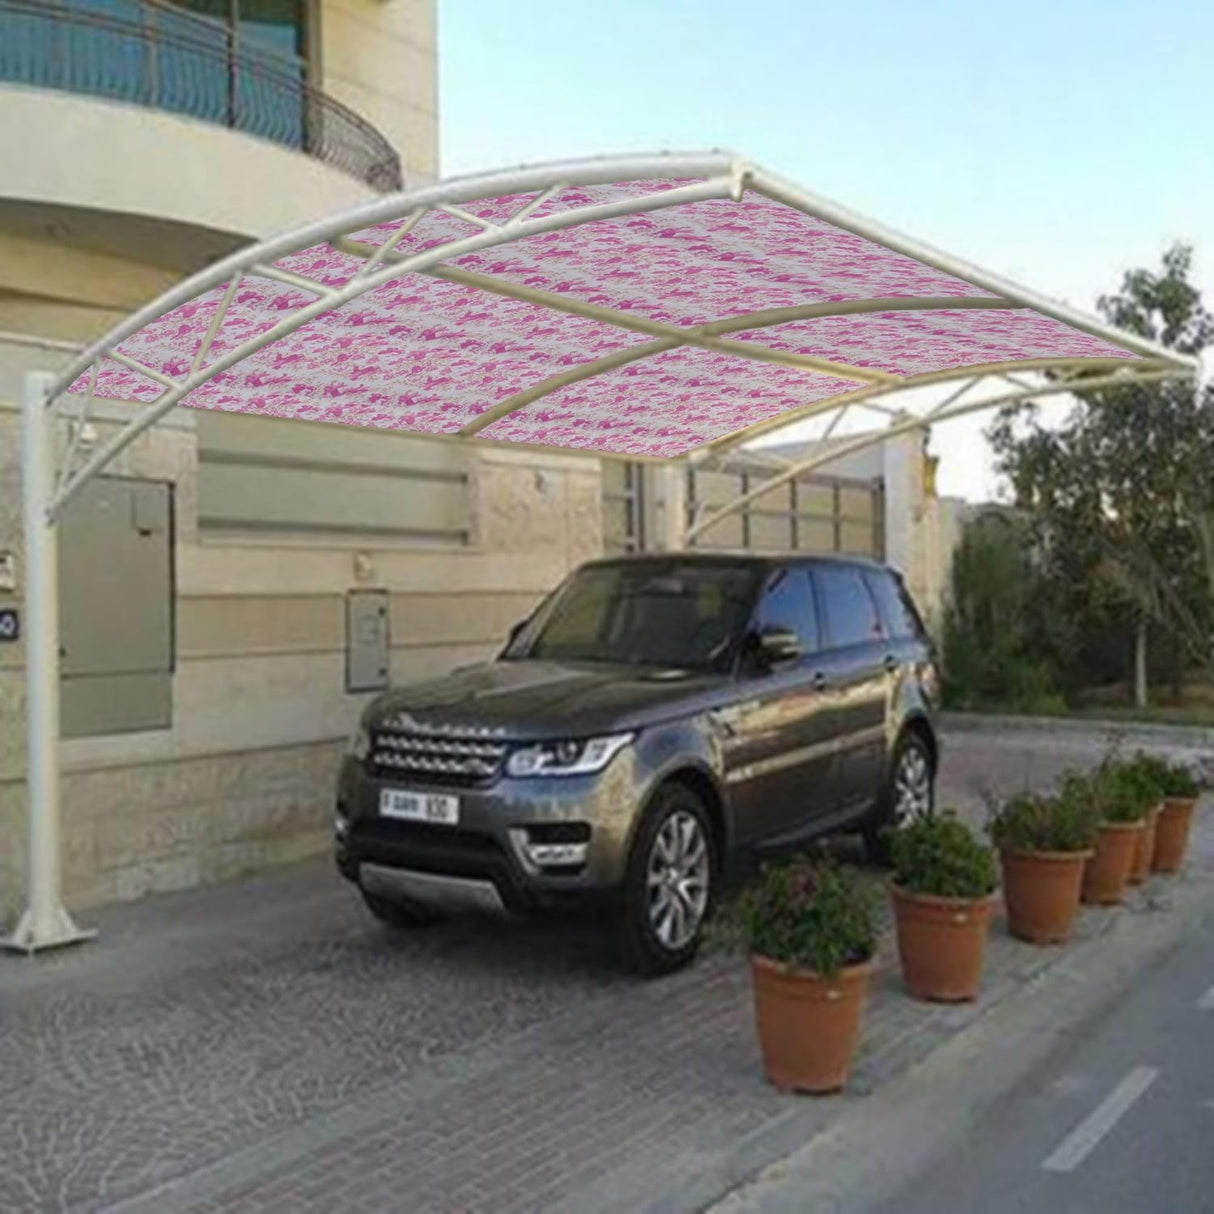 Singhal UV Resistant Polypropylene Sheet Car Parking Sheet | Gate Sheet | Grill Sheet | Gate Covering Sheet | Balcony Safety Sheet | Privacy Sheet, Printed Pink Design (3x5 Feet)